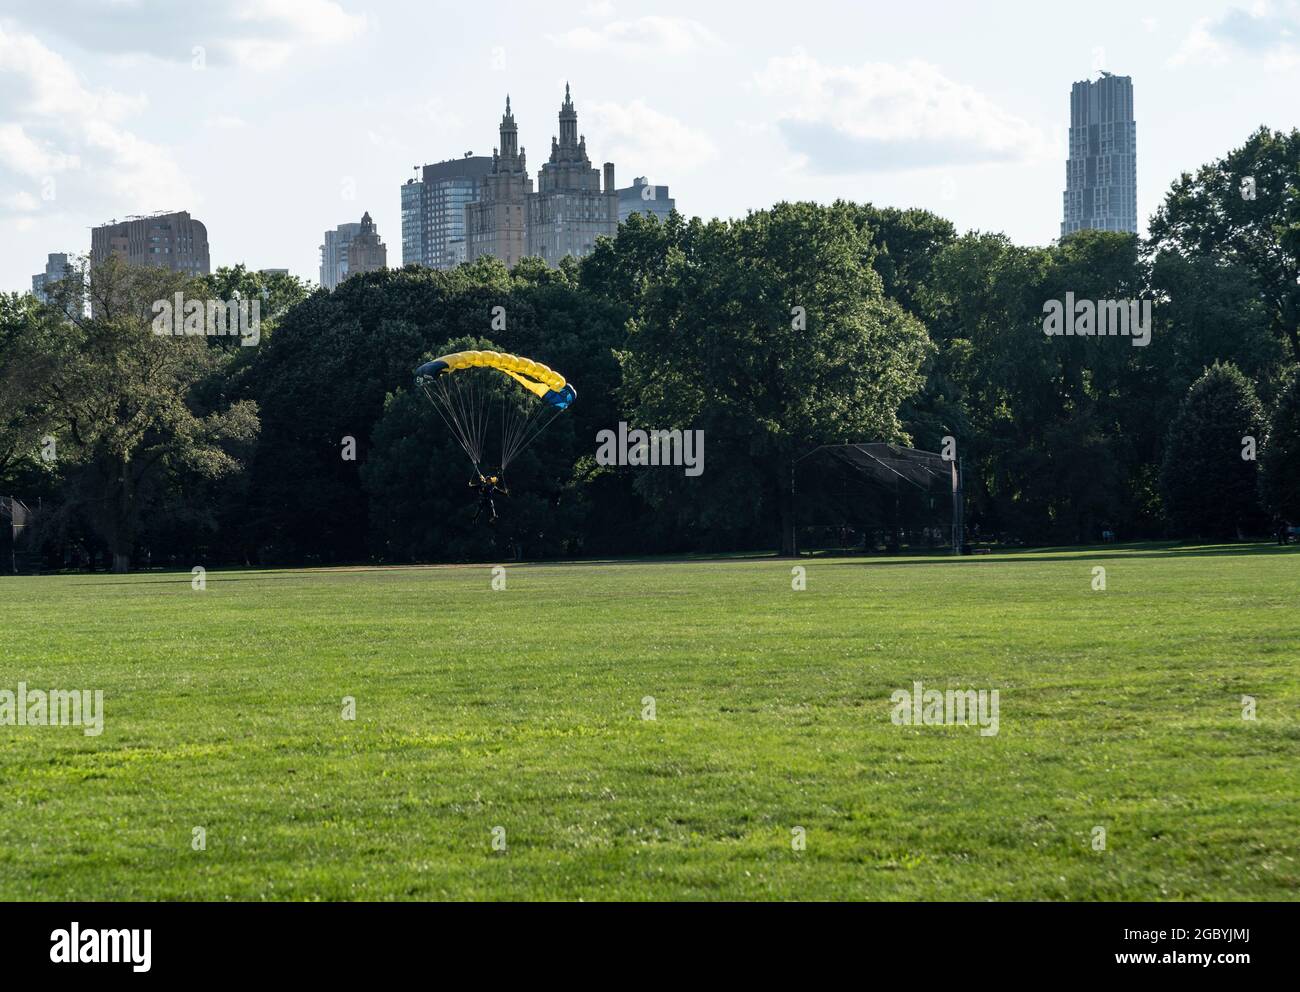 New York, NY - 5 août 2021 : des membres de l'équipe de parachutistes de la marine des États-Unis Leap Frogs effectuent une démonstration de parachute en chute libre à Central Park Banque D'Images